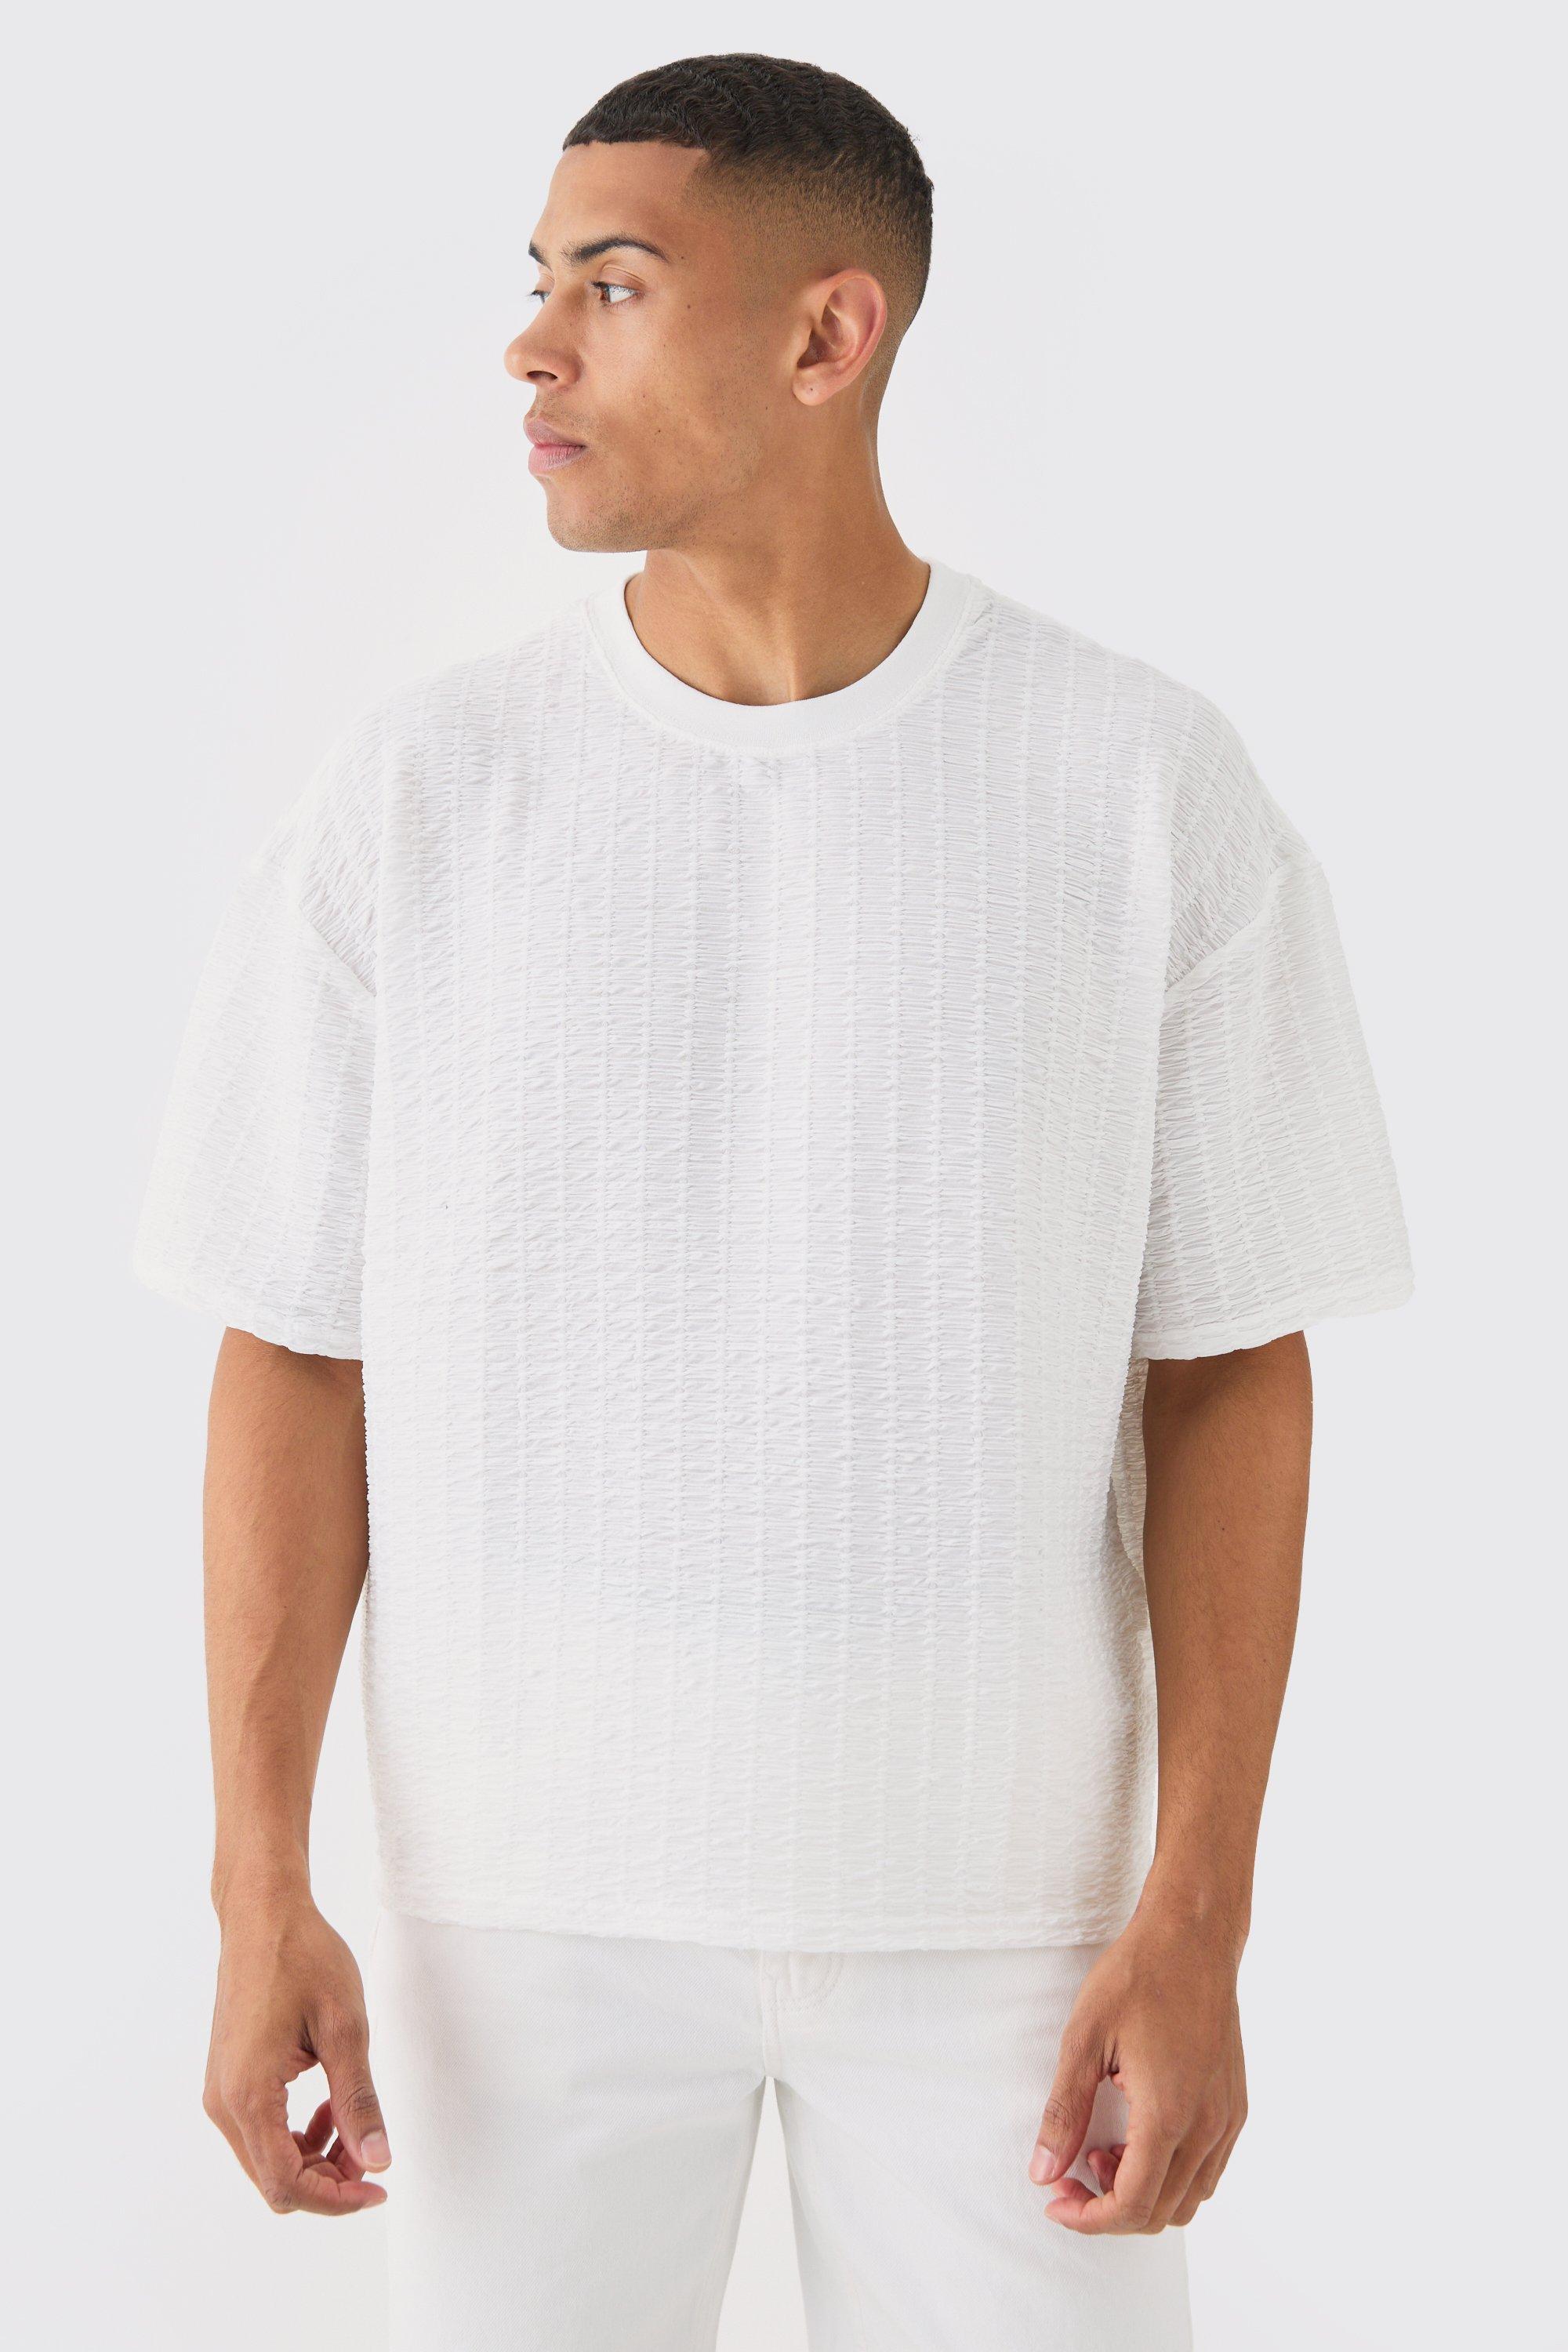 Image of Oversized Boxy Pleated Texture T-shirt, Bianco